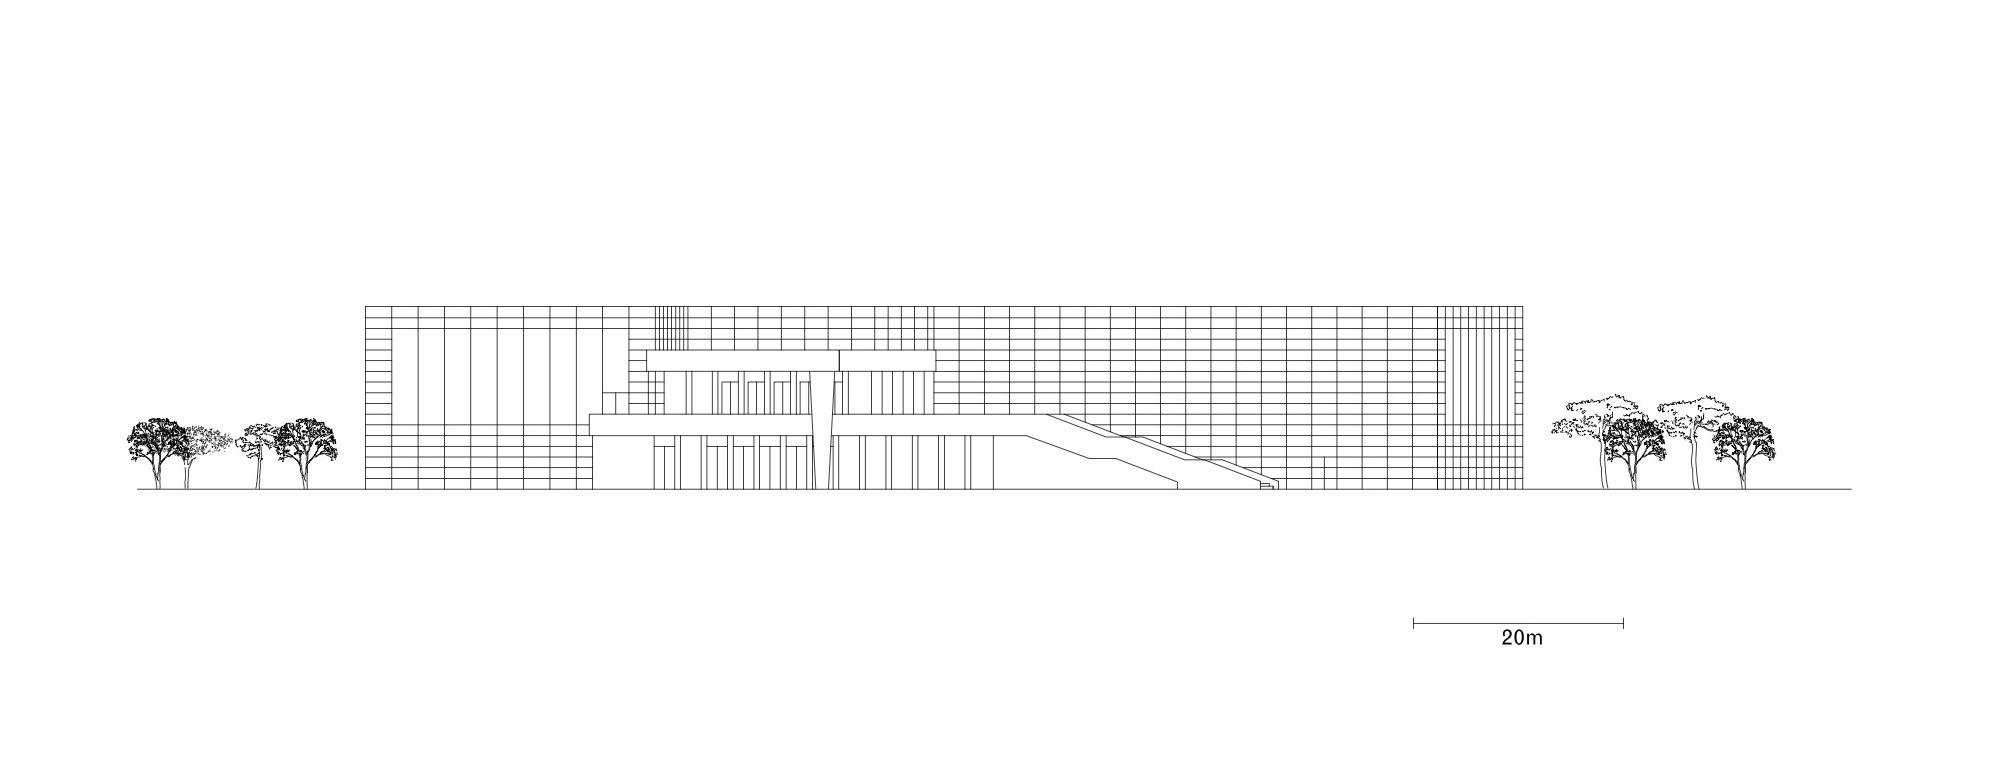 上海西岸美术馆建筑设计/David Chipperfield Architects